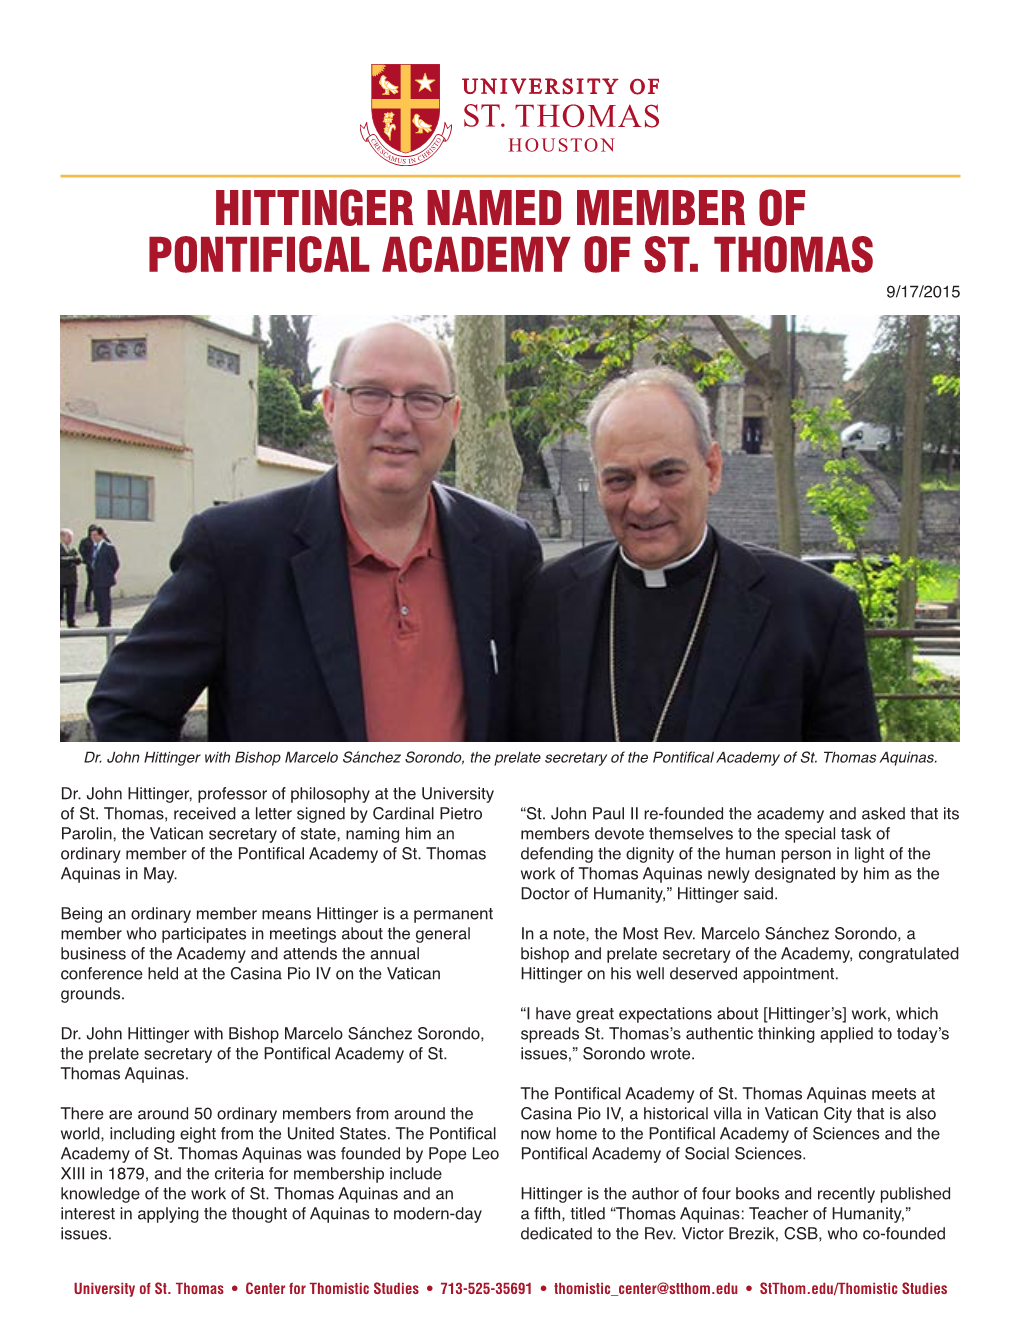 Hittinger Named Member of Pontifical Academy of St